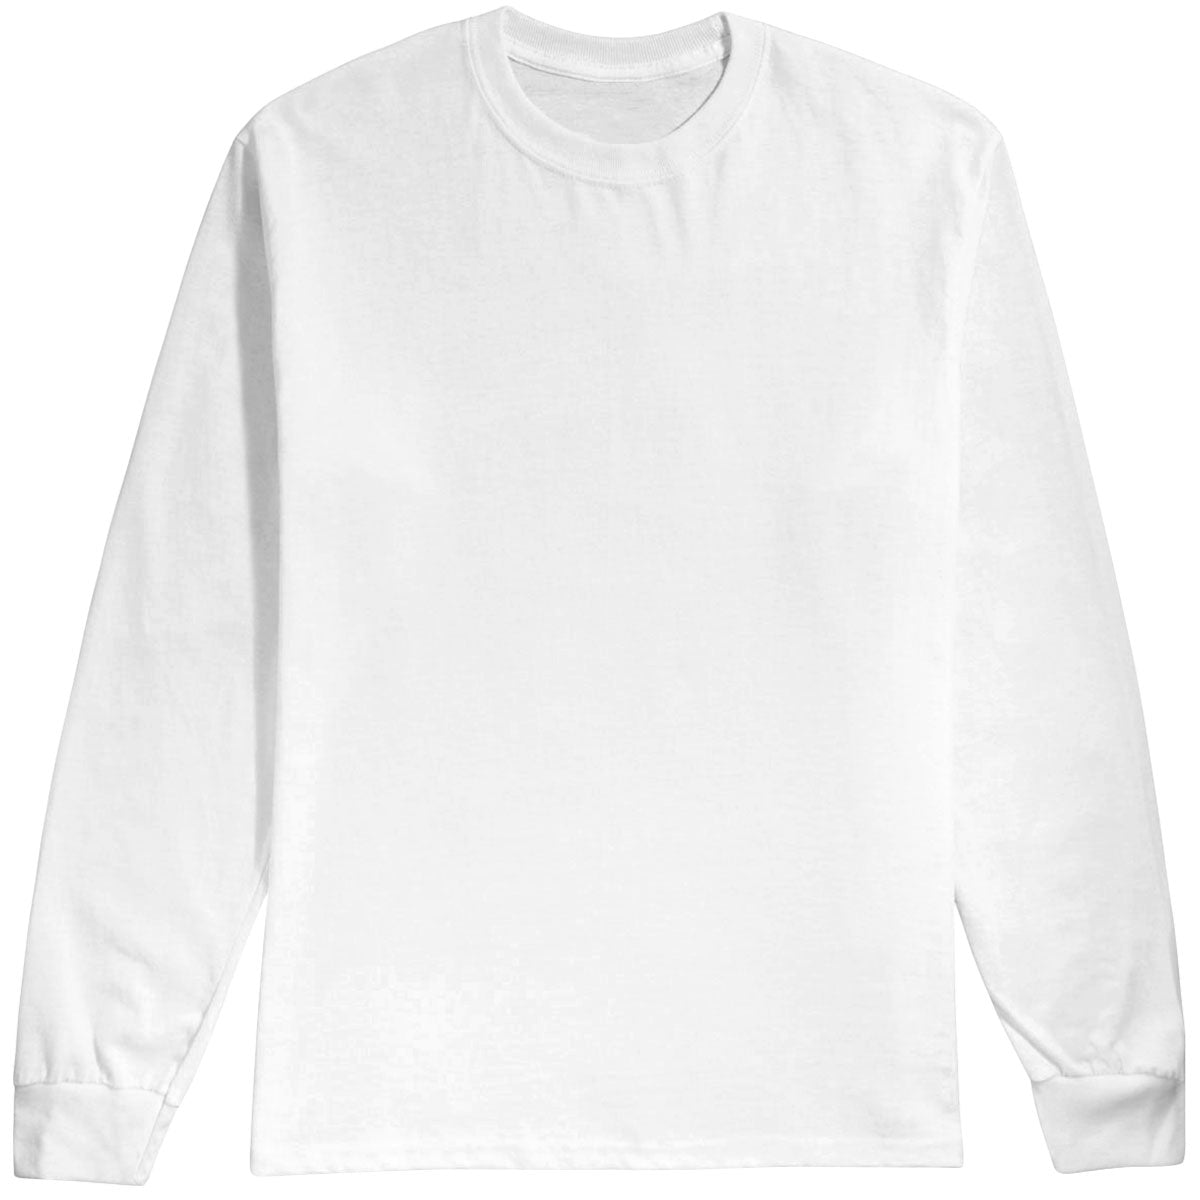 Jai Tanju Skate Chip Collage Long Sleeve T-Shirt image 3